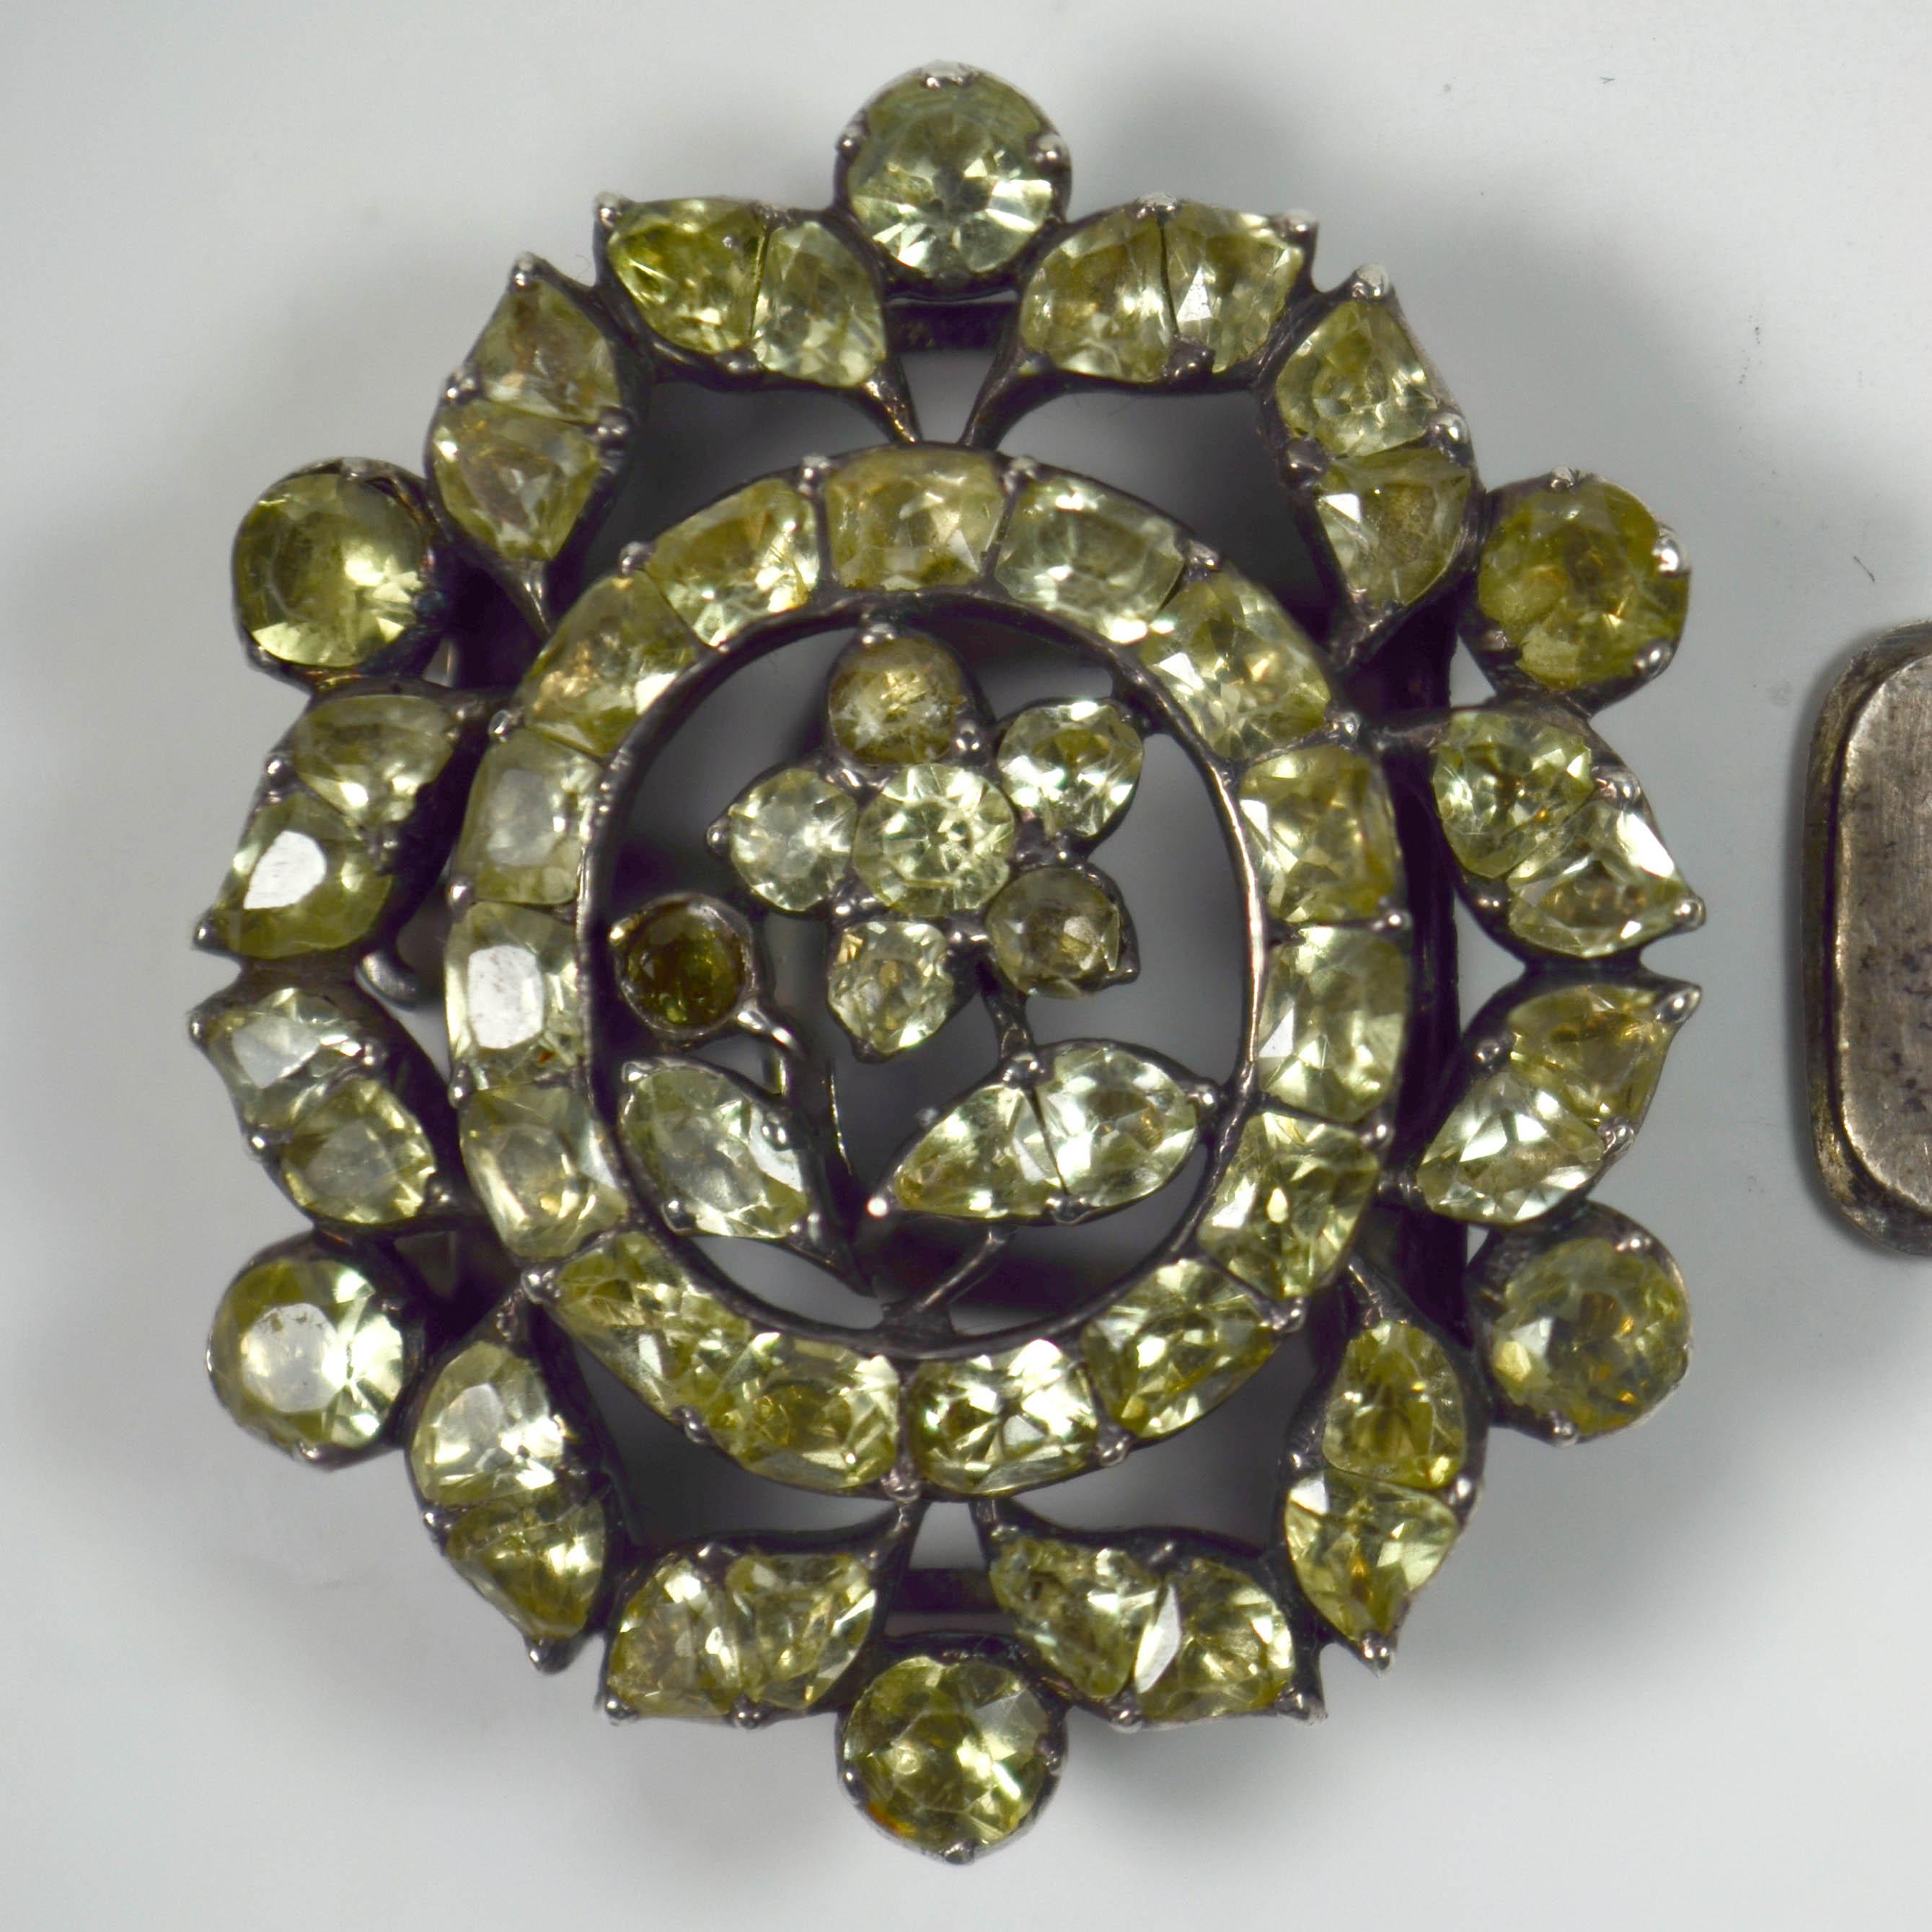 Un fermoir antique serti de chrysobéryl vert pâle dans un motif floral monté en argent. Portugais vers 1750. 

Les 57 pierres à feuille de chrysobéryl sont d'origine et sont en bon état, avec très peu d'usure. Il n'y a pas de décoloration évidente